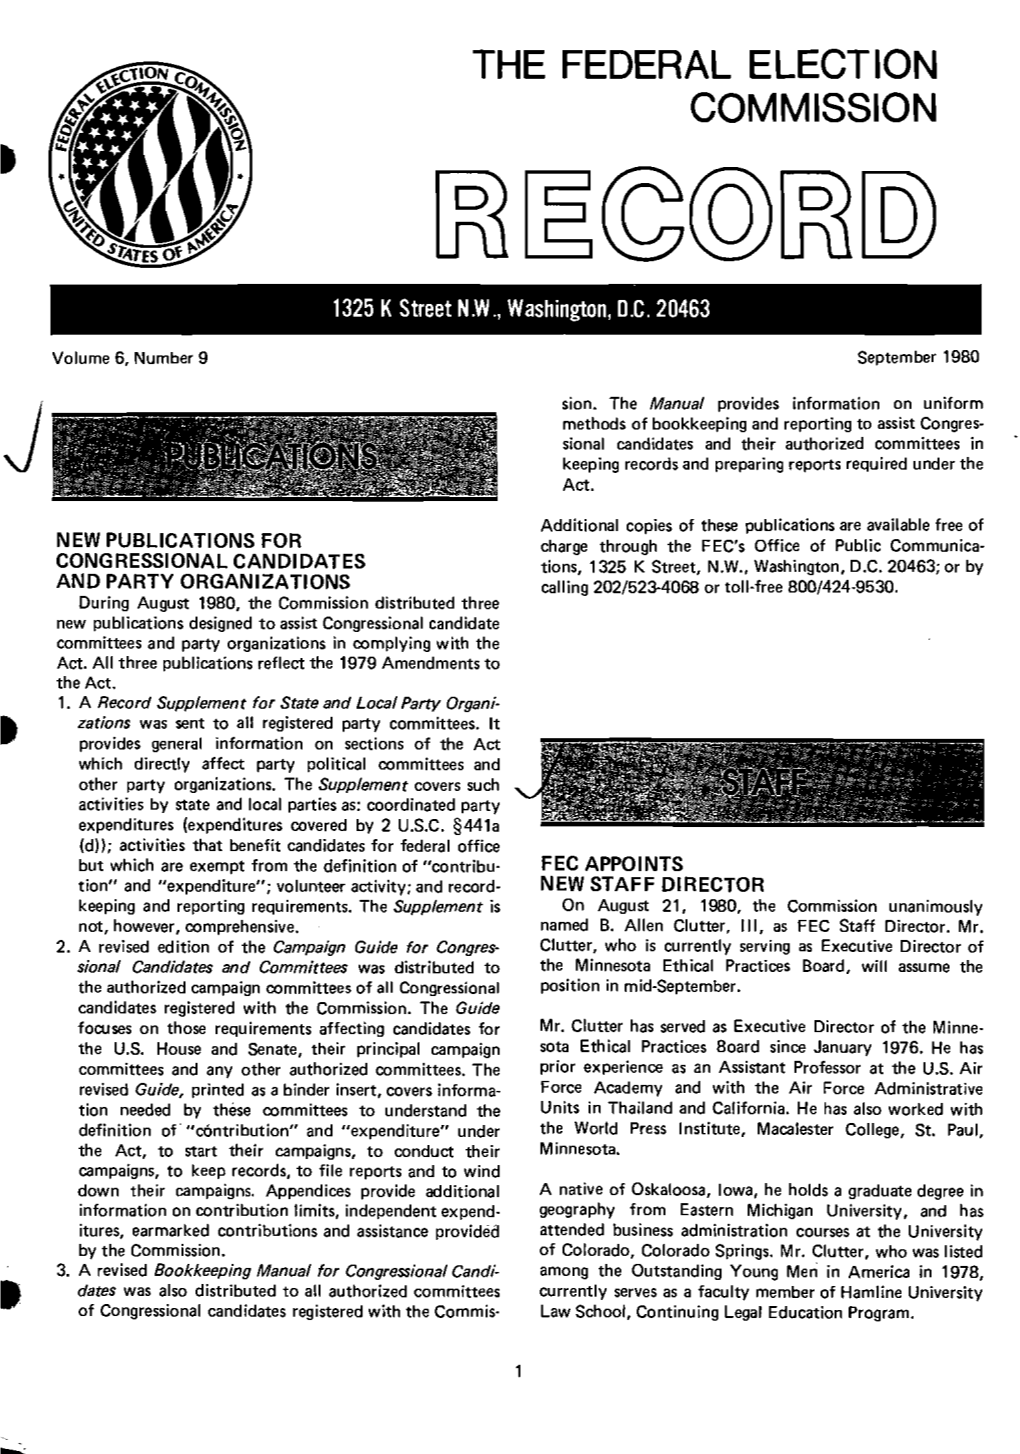 September 1980 Record